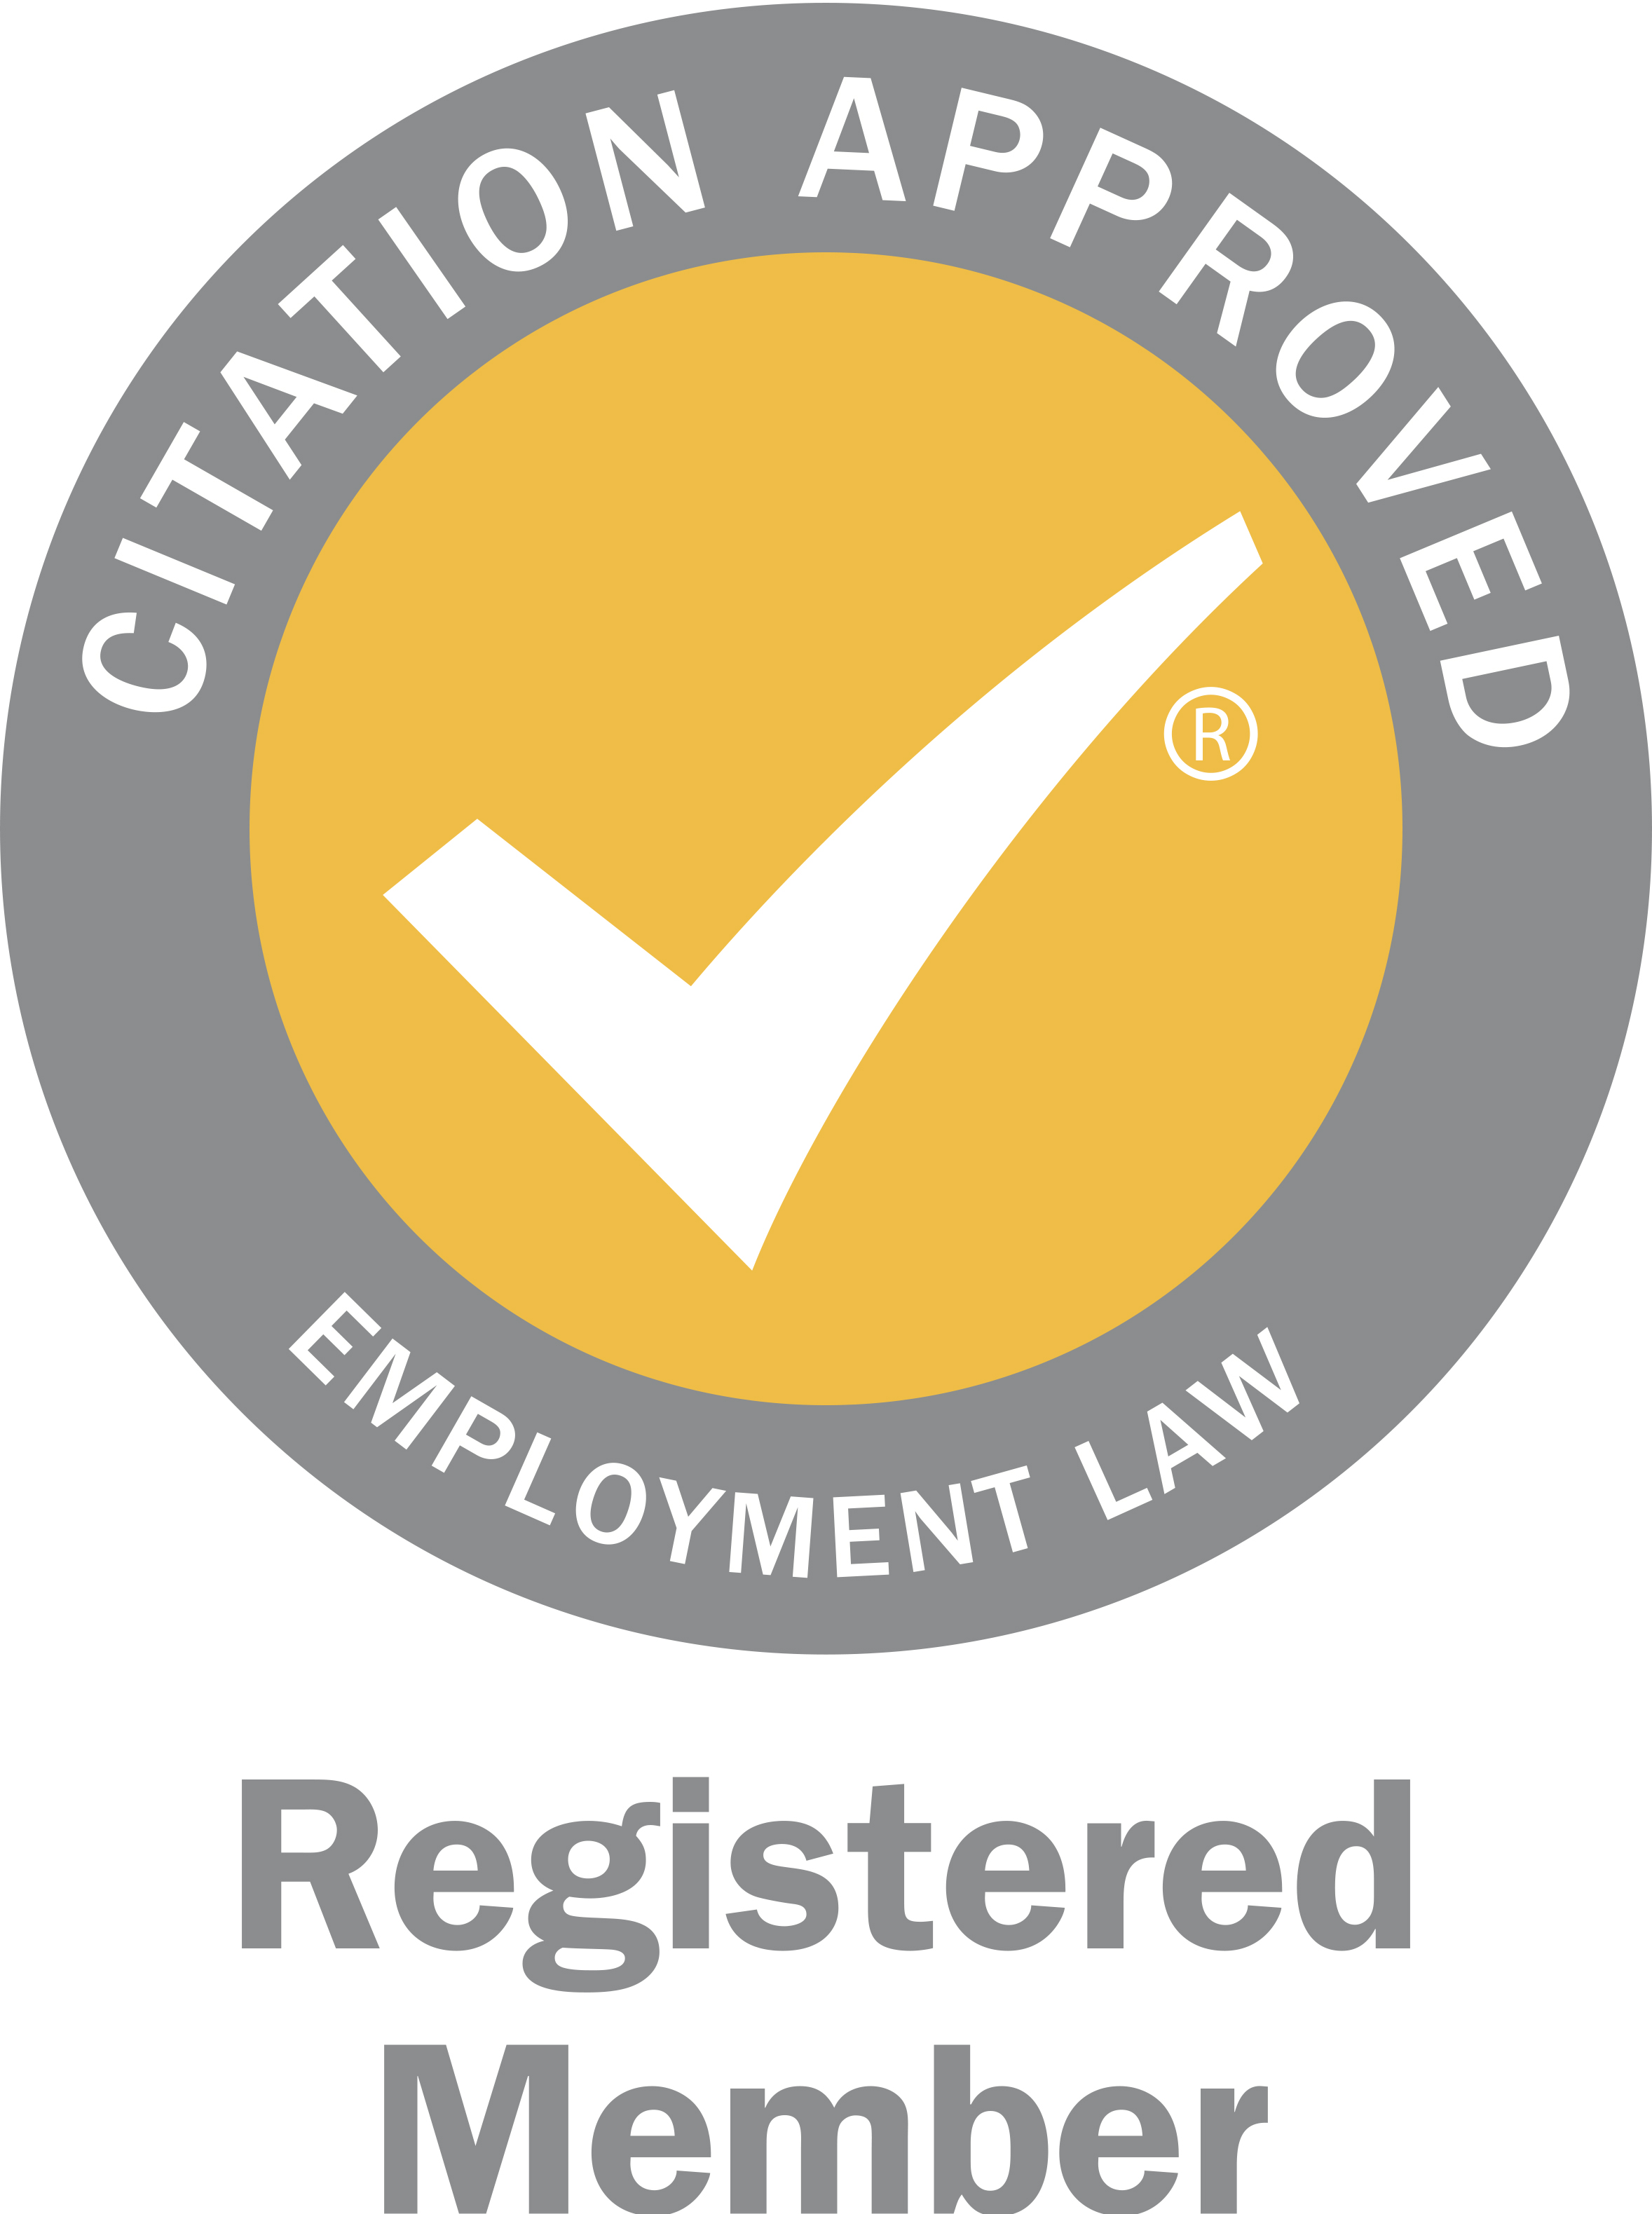 Citation Employment Law